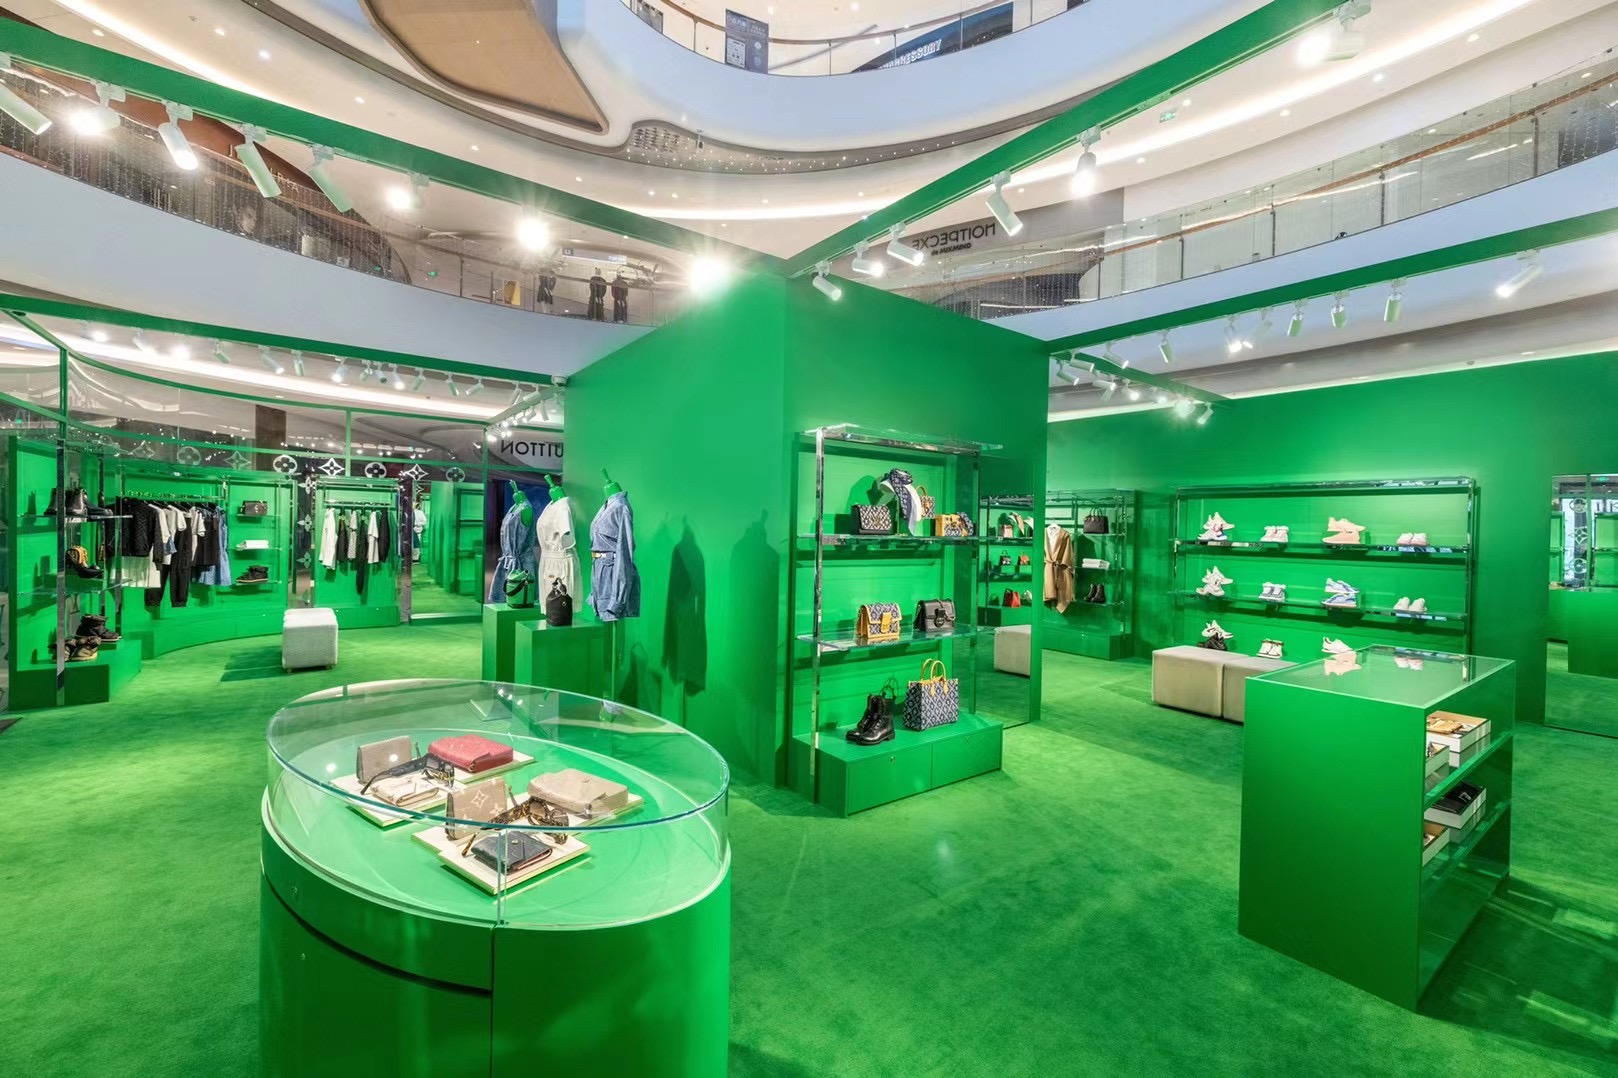 Louis Vuitton SS21 Women Green Pop-up Facelift March 1st Jinan